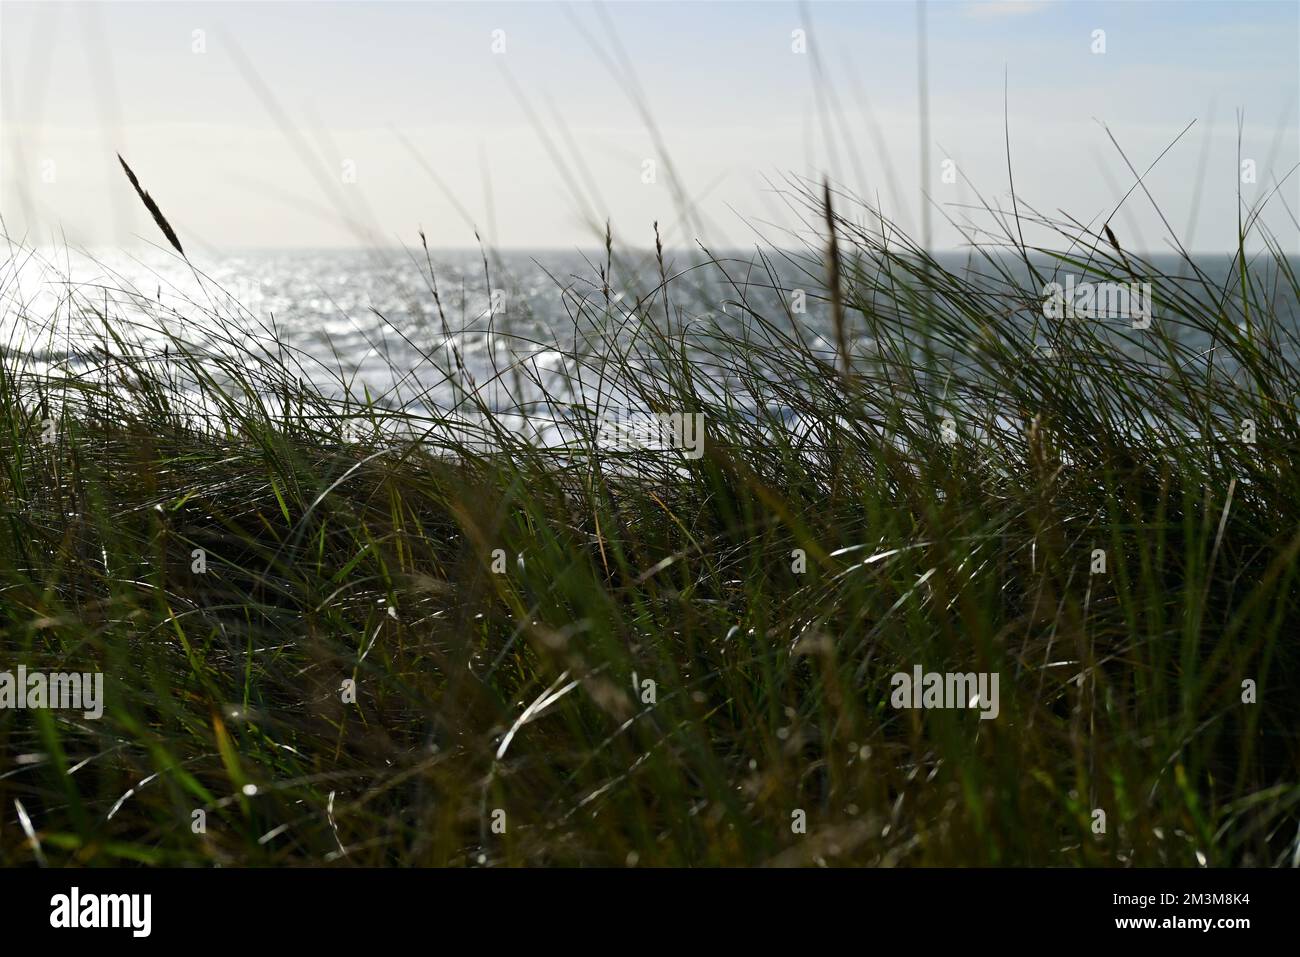 Beach grasses as a closeup against the ocean Stock Photo